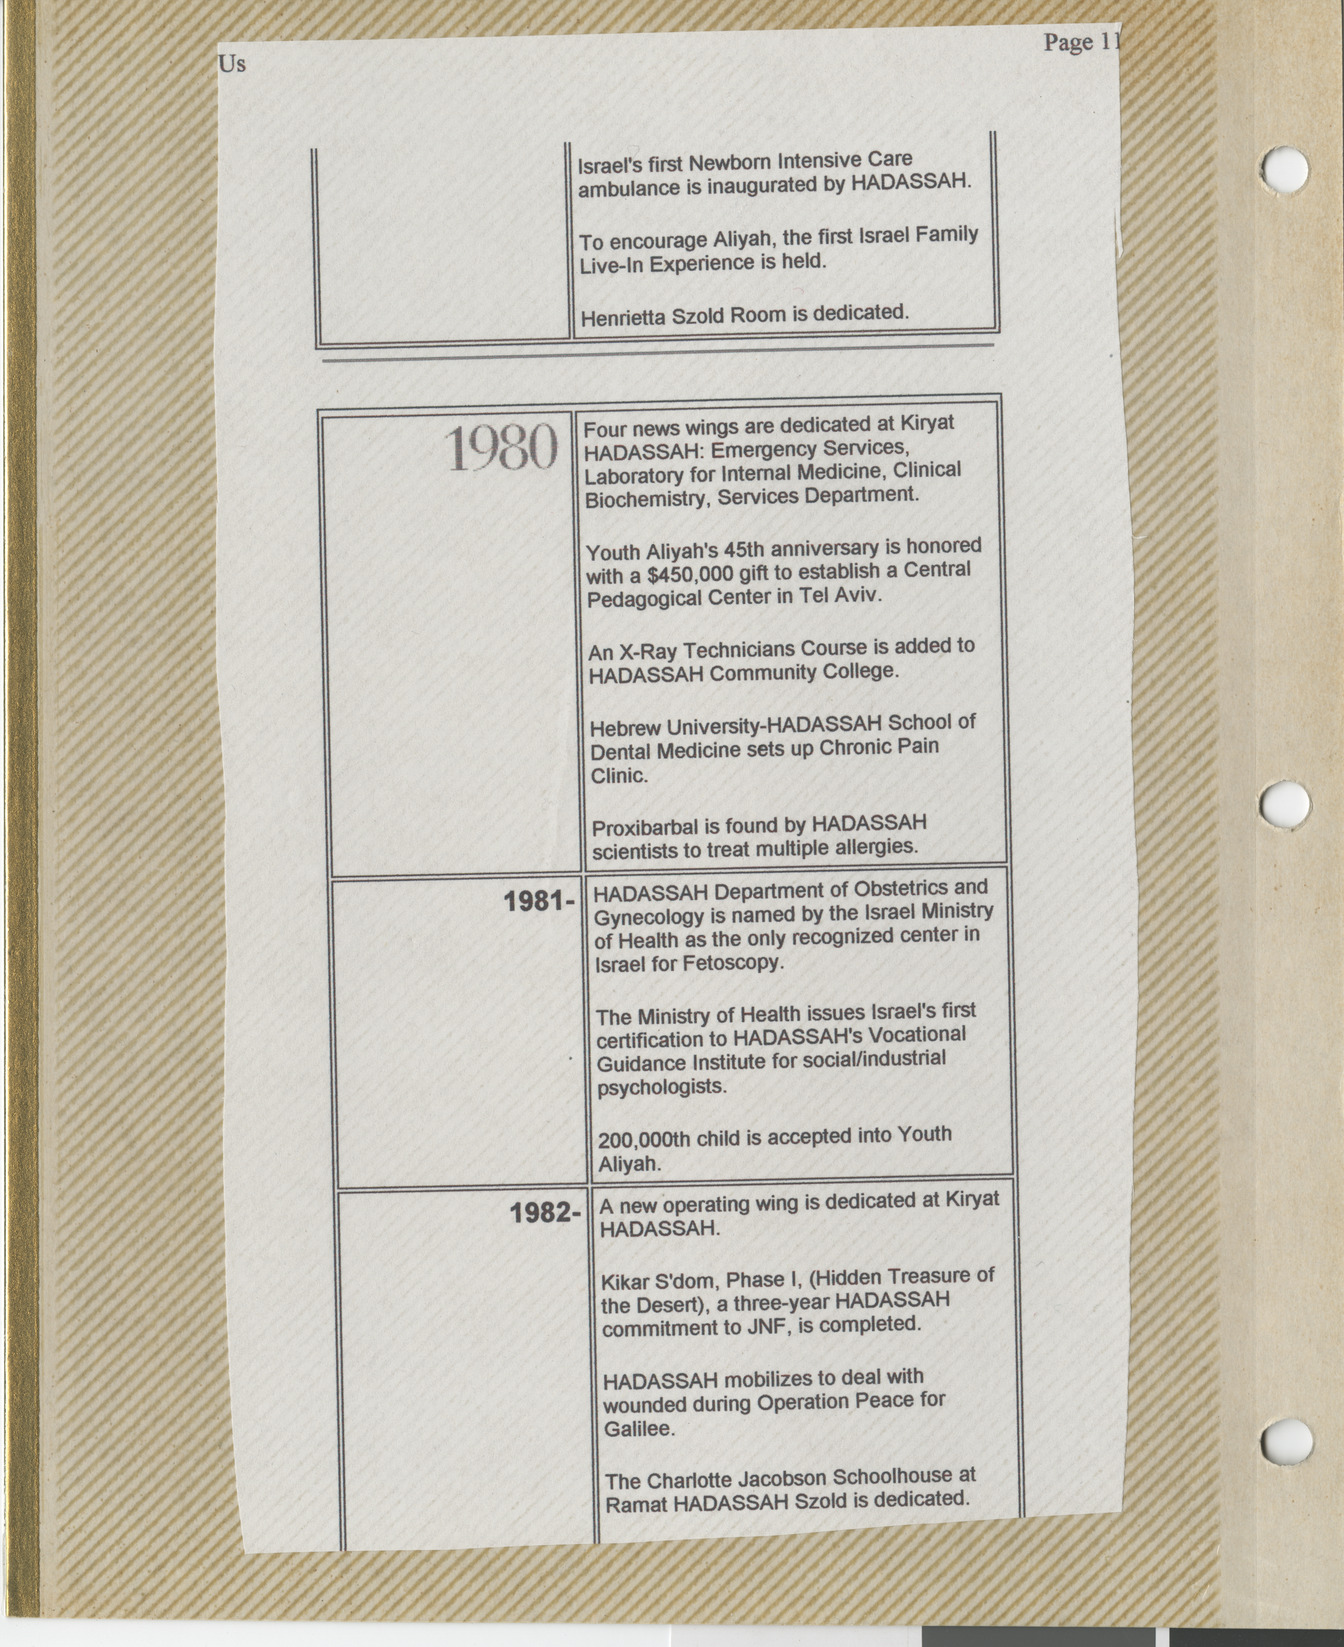 Clipping, Hadassah timeline 1980-1982